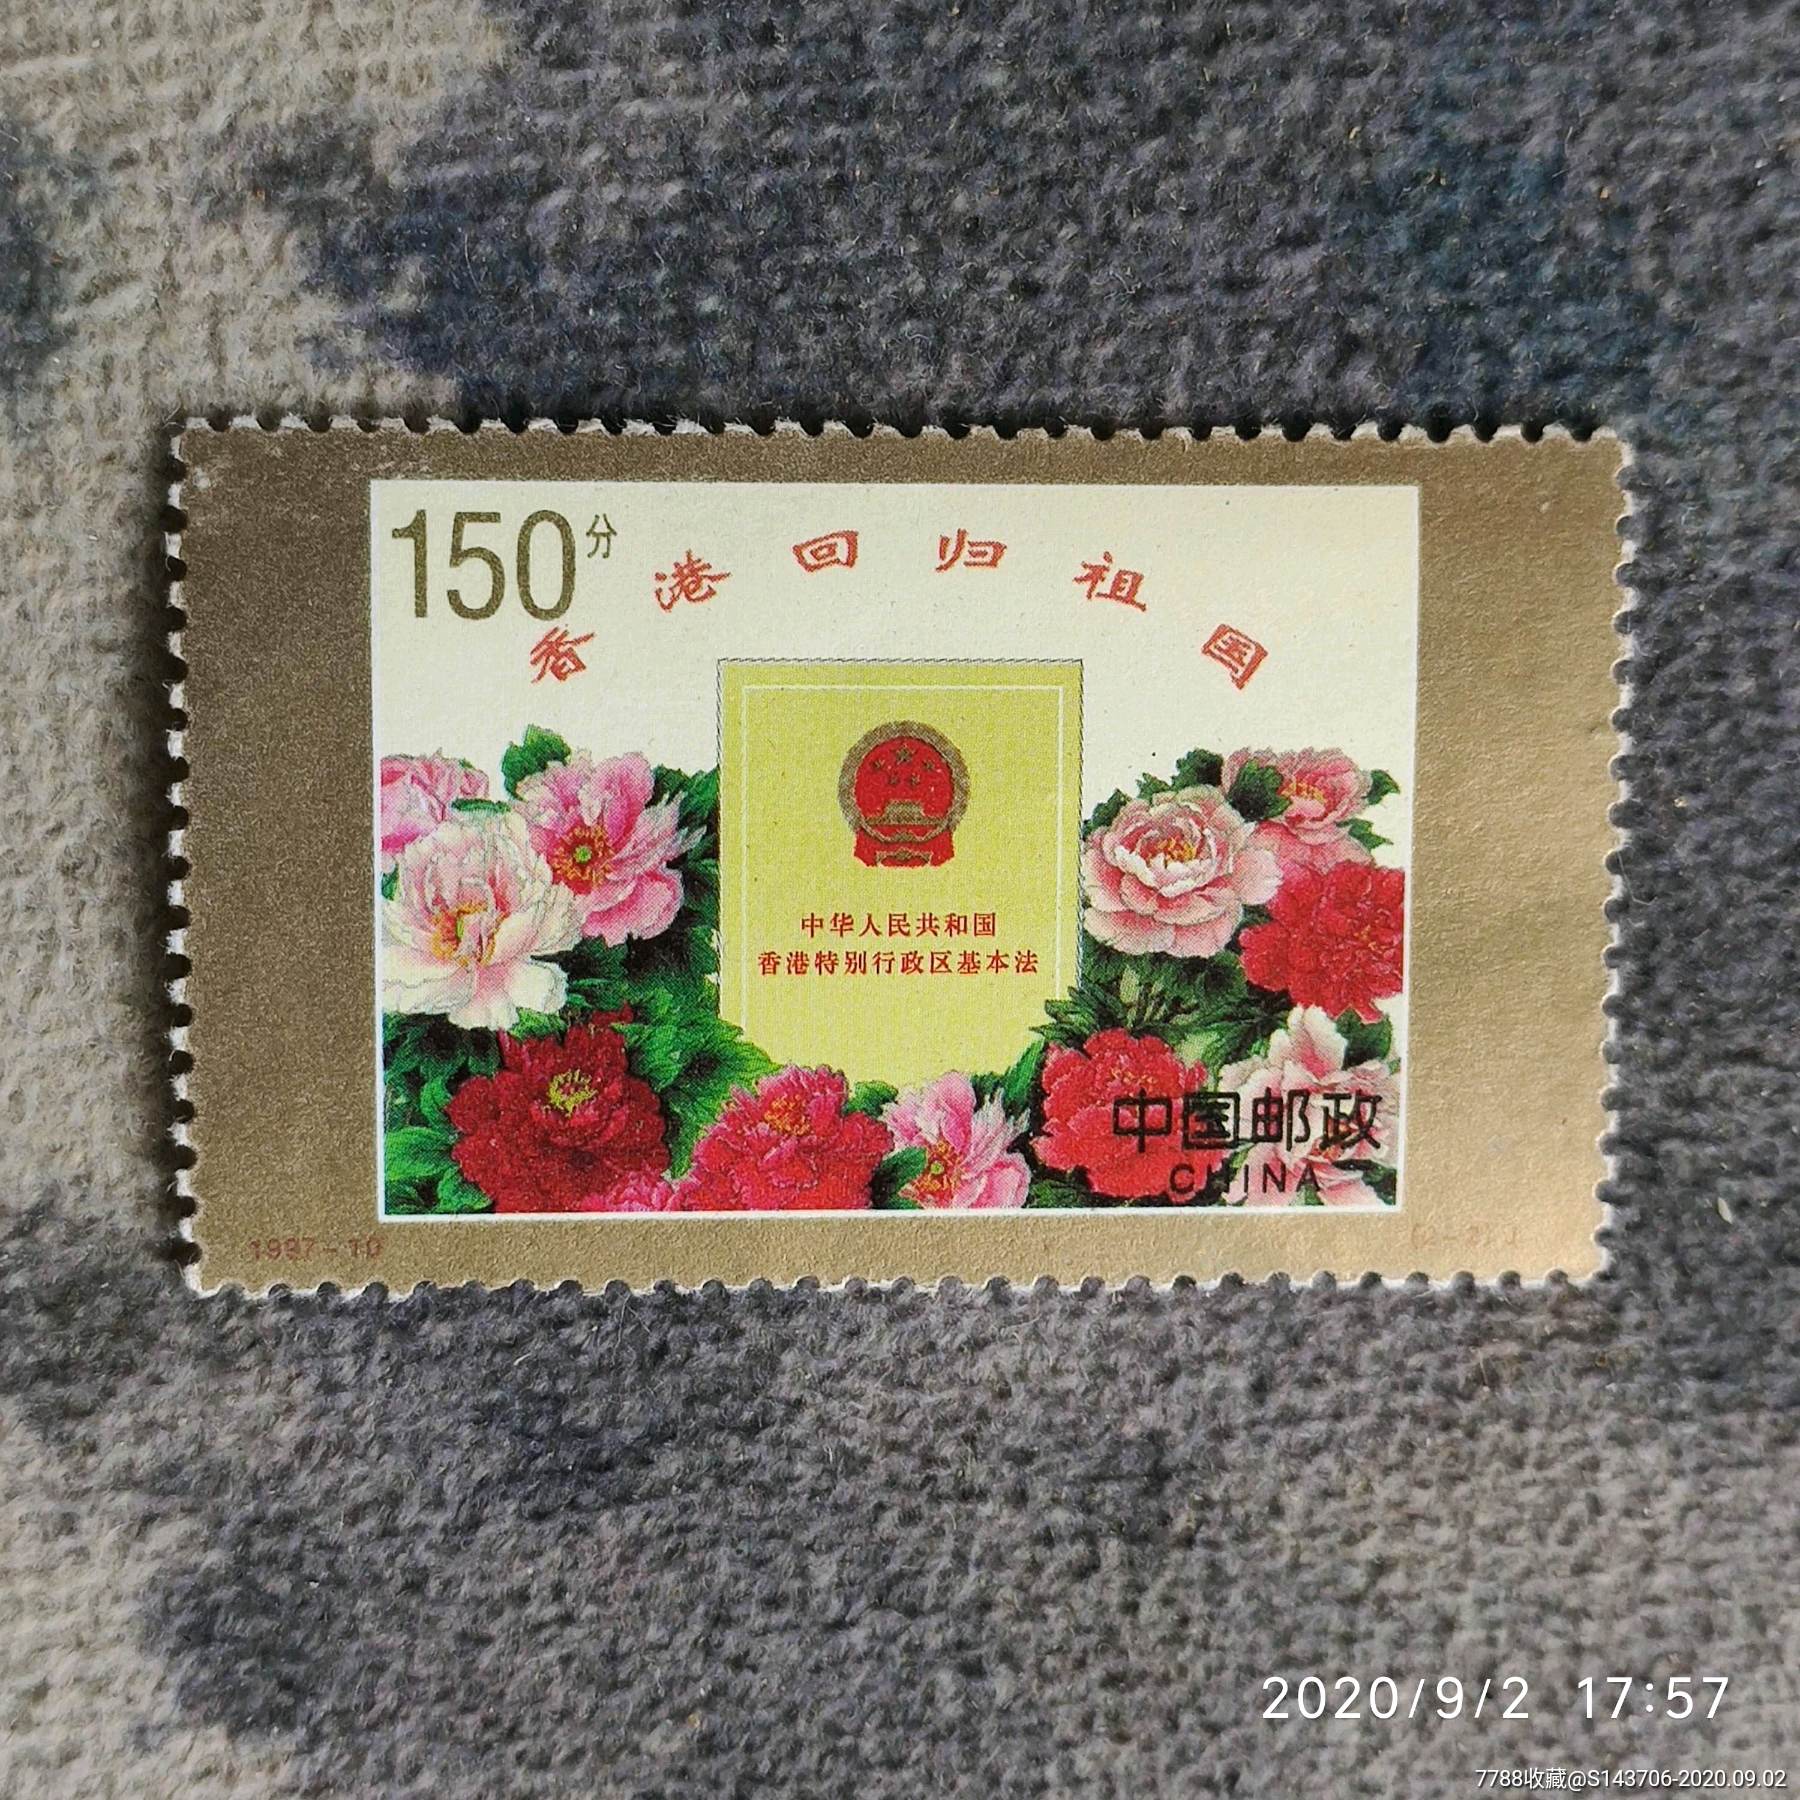 1997年香港回归祖国纪念邮票,a7